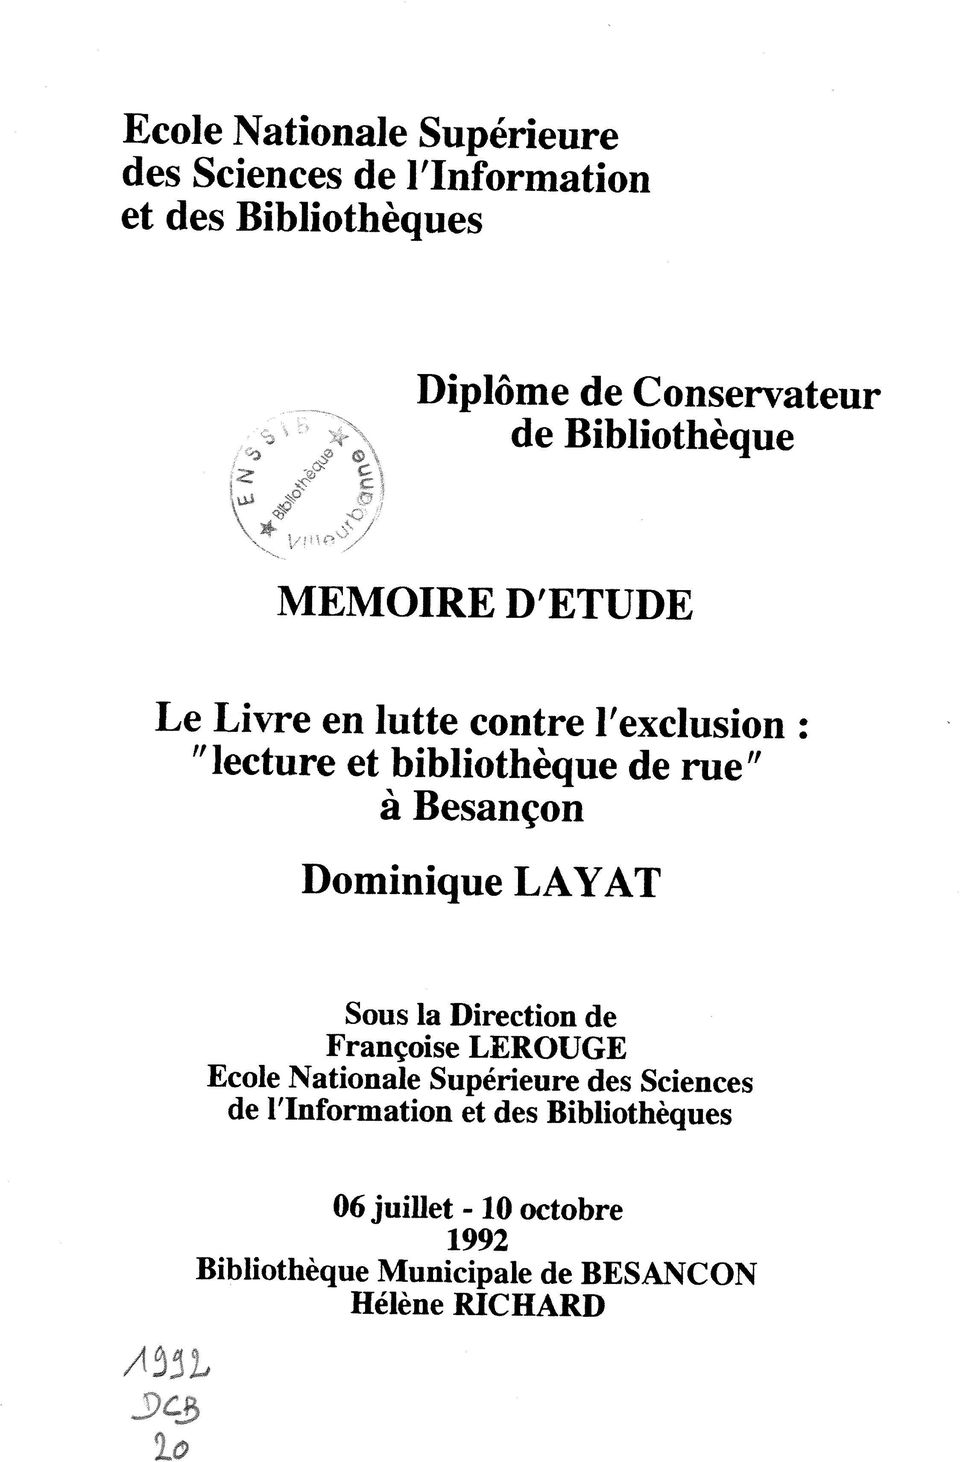 bibliotheque de rue" a Besan^on Dominique LAYAT Sous la Direction de Franeoise LEROUGE Ecole Nationale Superieure